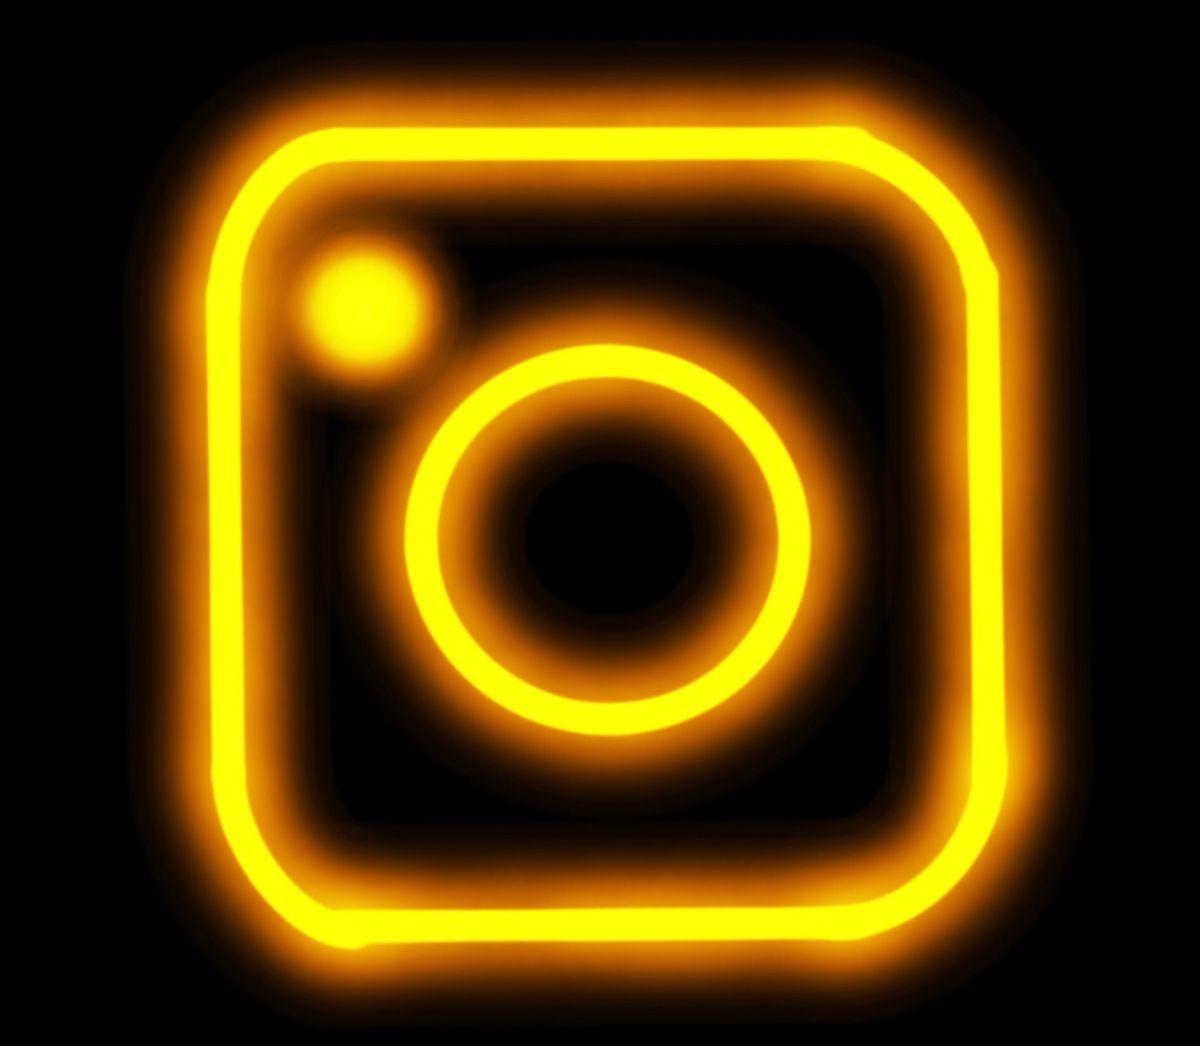 Instagram Neon Wallpapers - Top Free Instagram Neon Backgrounds ...